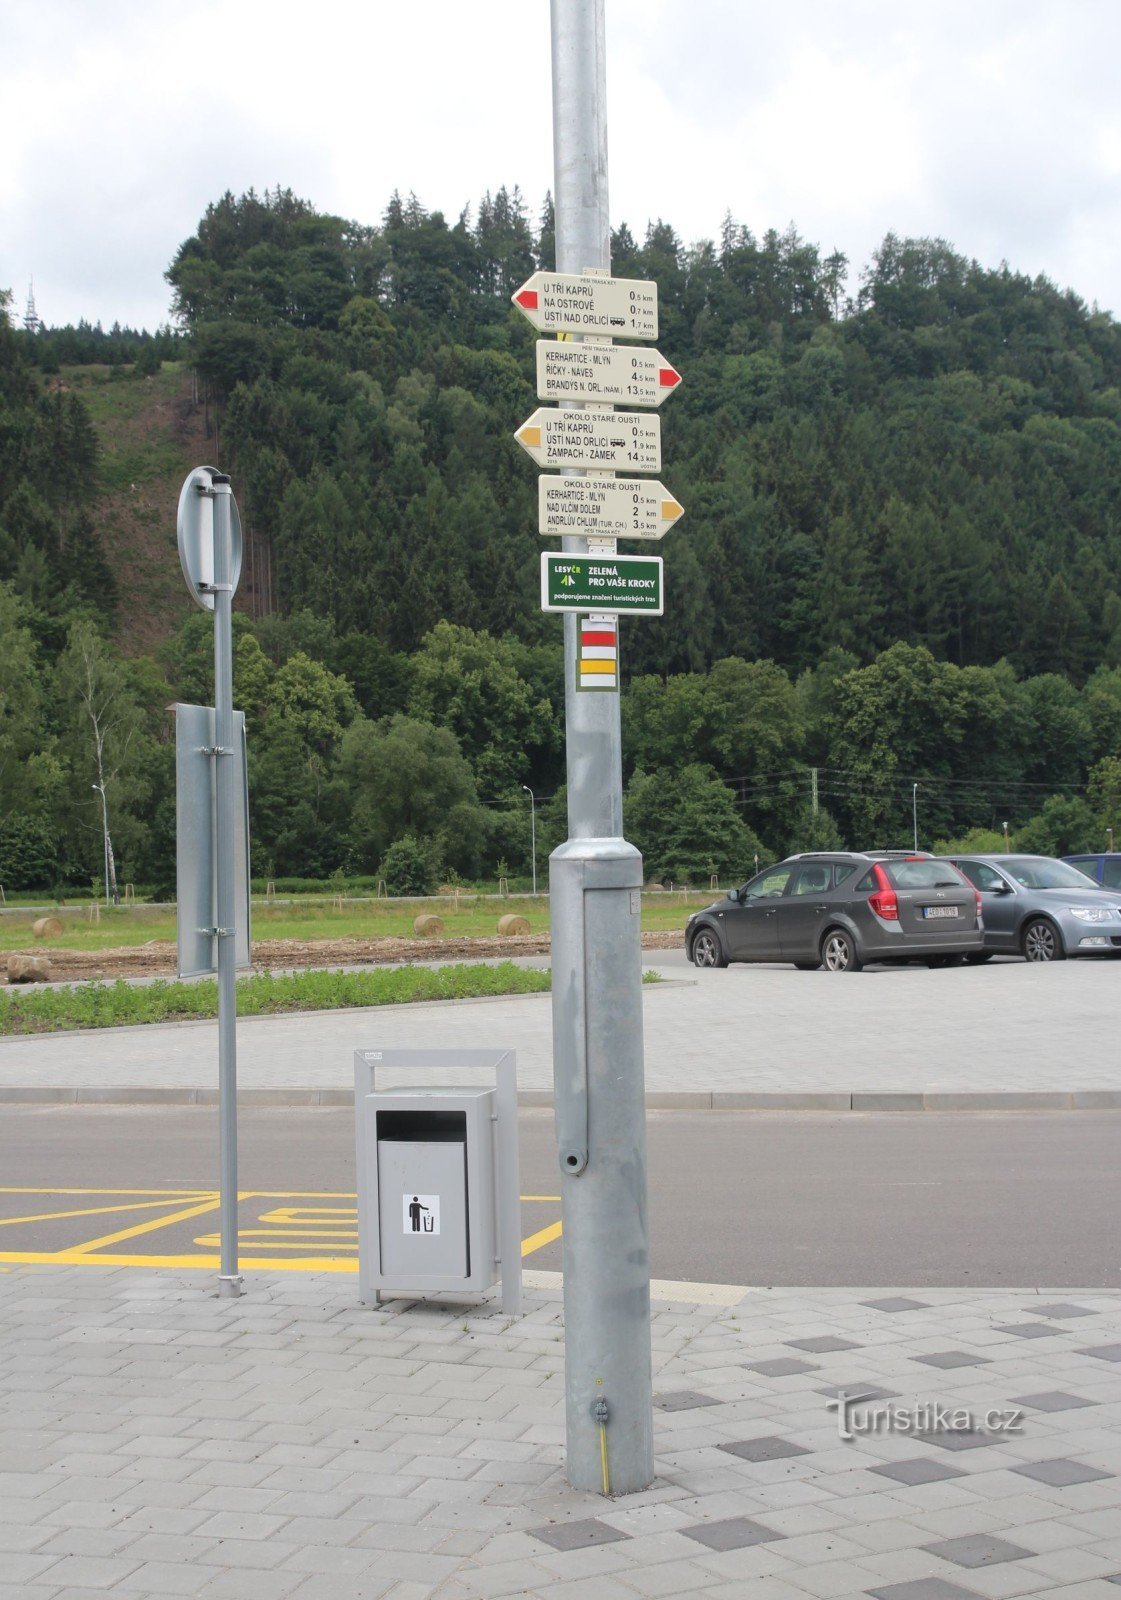 Tourist junction Ústí nad Orlicí, highway